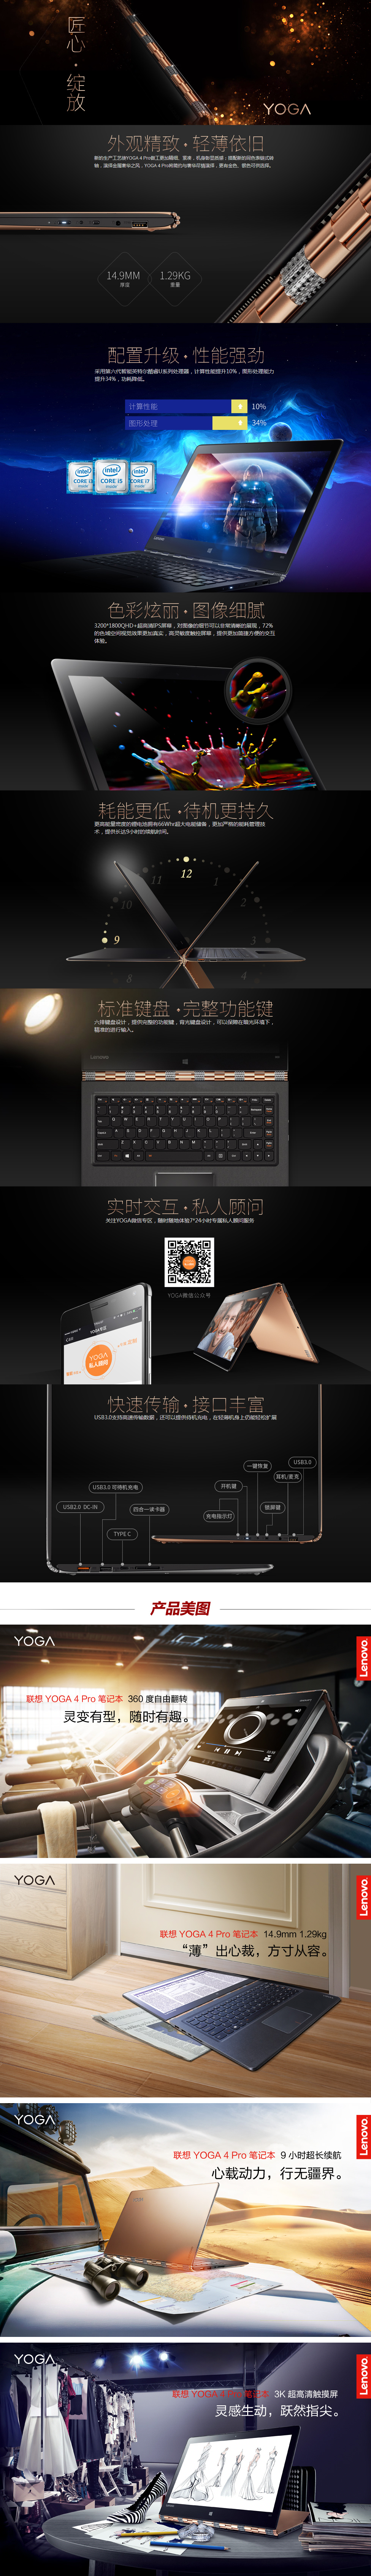 YOGA 4 Pro(YOGA 900)-13-ISE(金色)-平板笔记本-联想商城.png